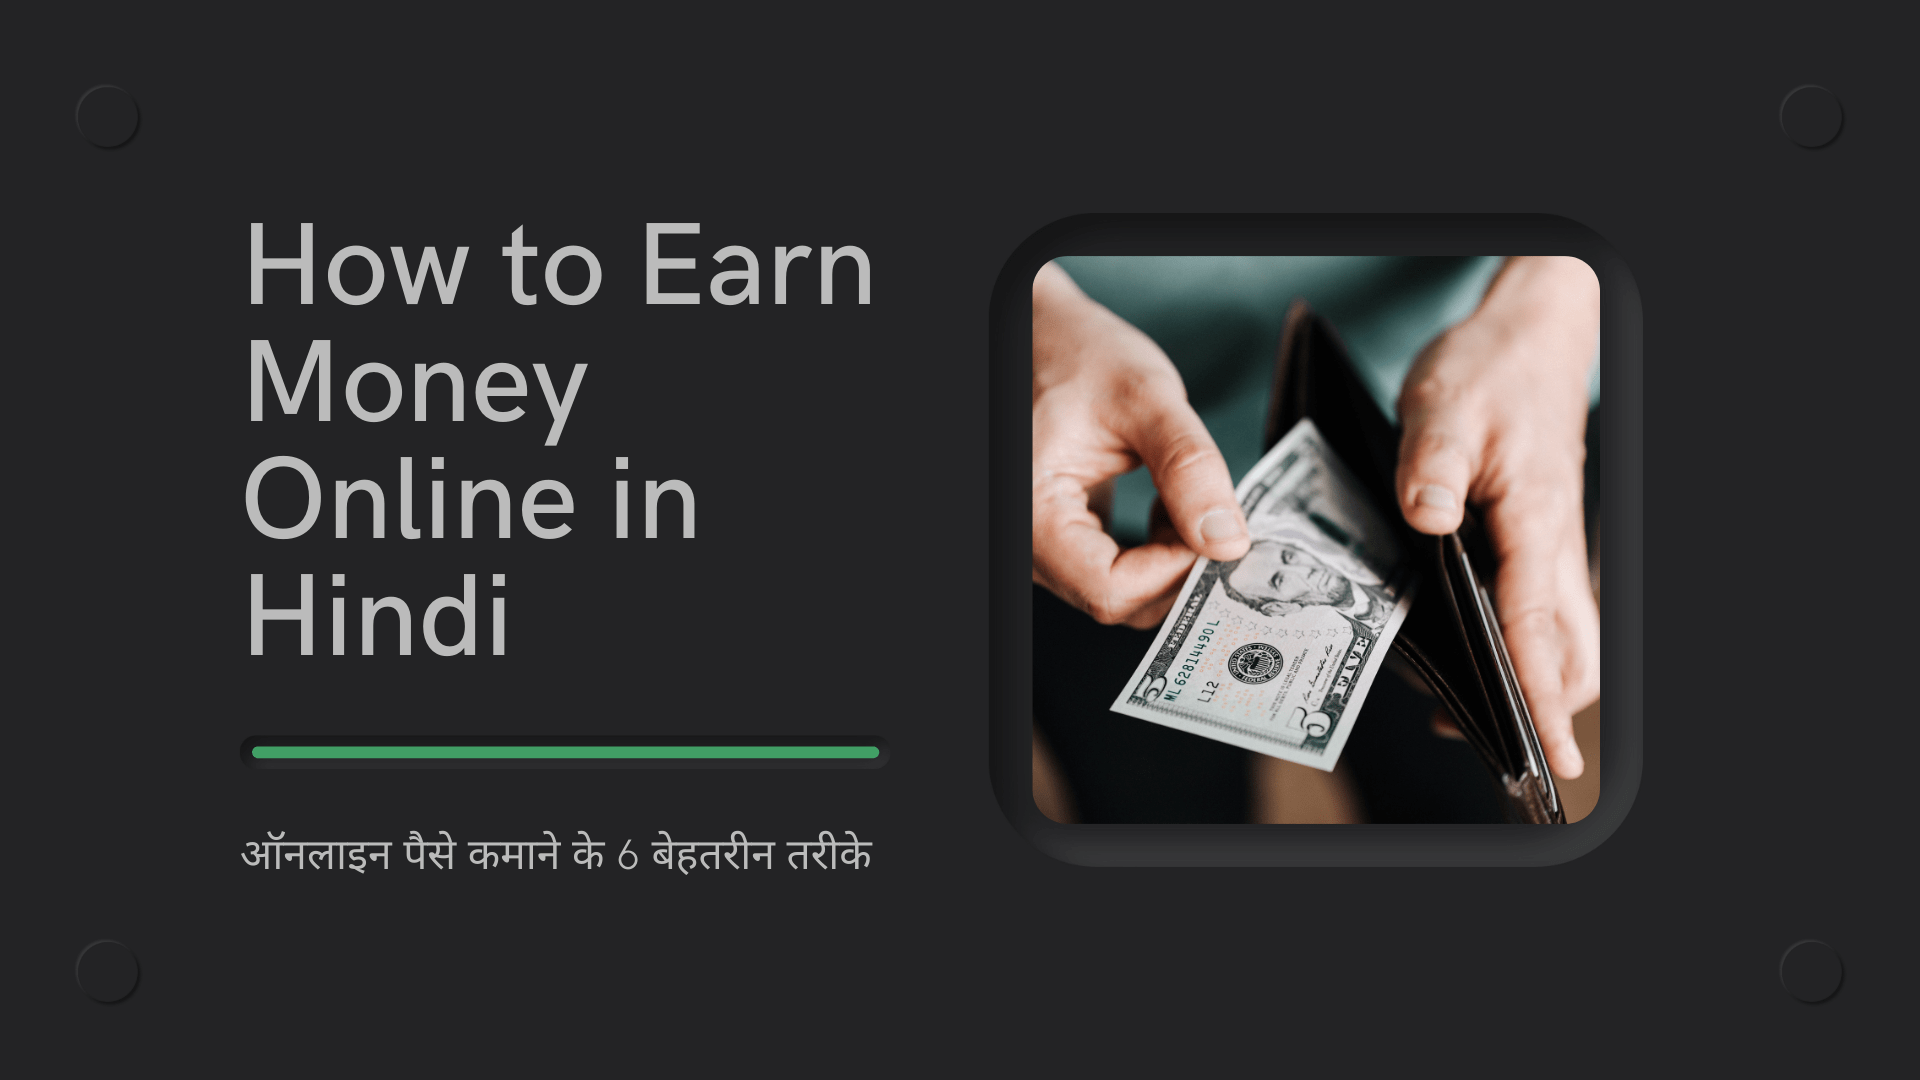 How to Earn Money Online in Hindi – ऑनलाइन पैसे कमाने के 9 बेहतरीन तरीके